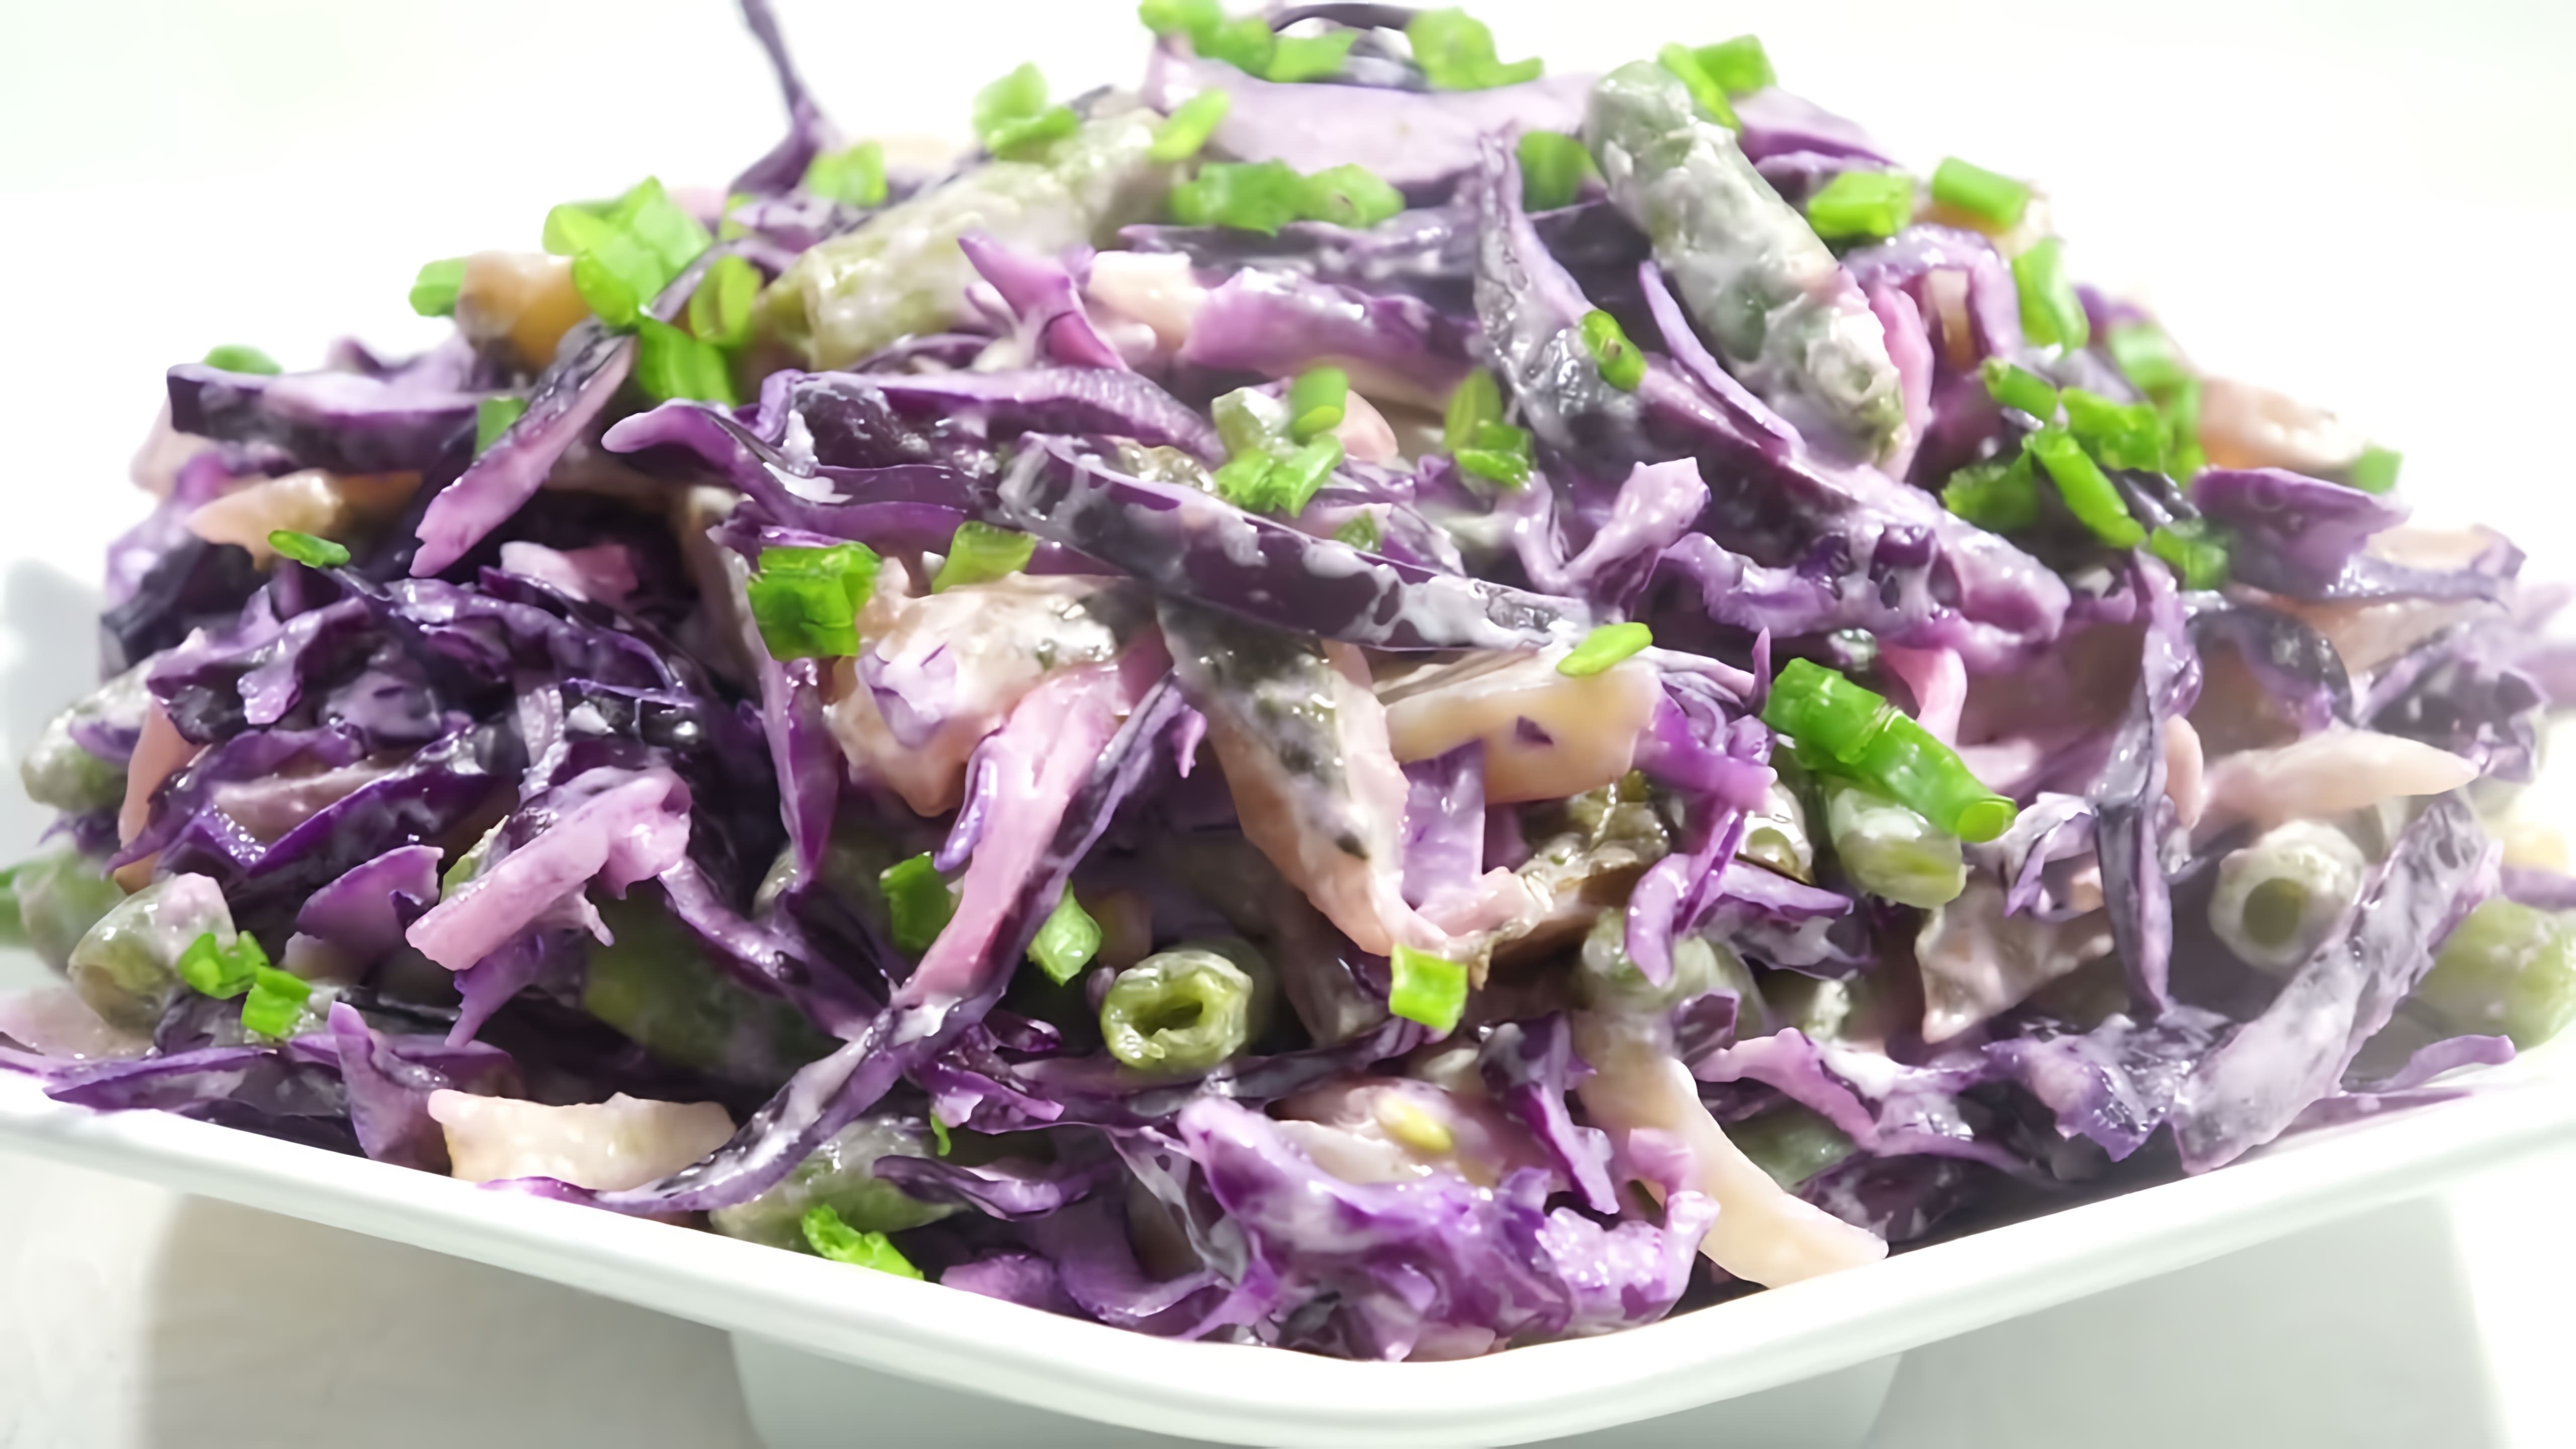 В этом видео демонстрируется рецепт приготовления салата из краснокочанной капусты